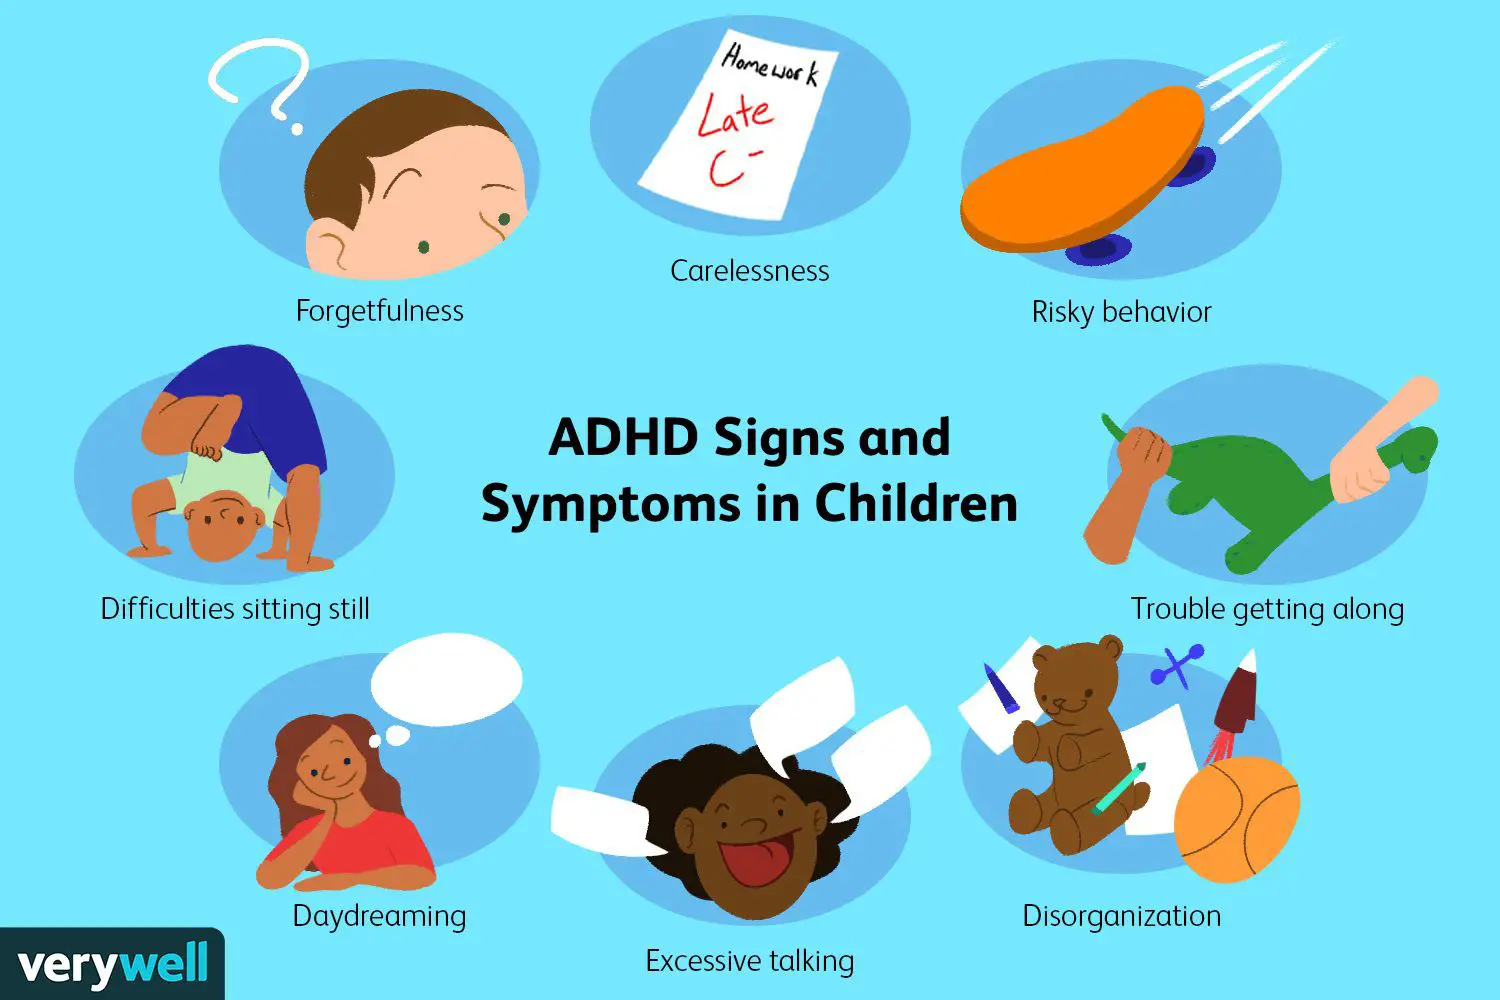 Symptoms of ADHD in children